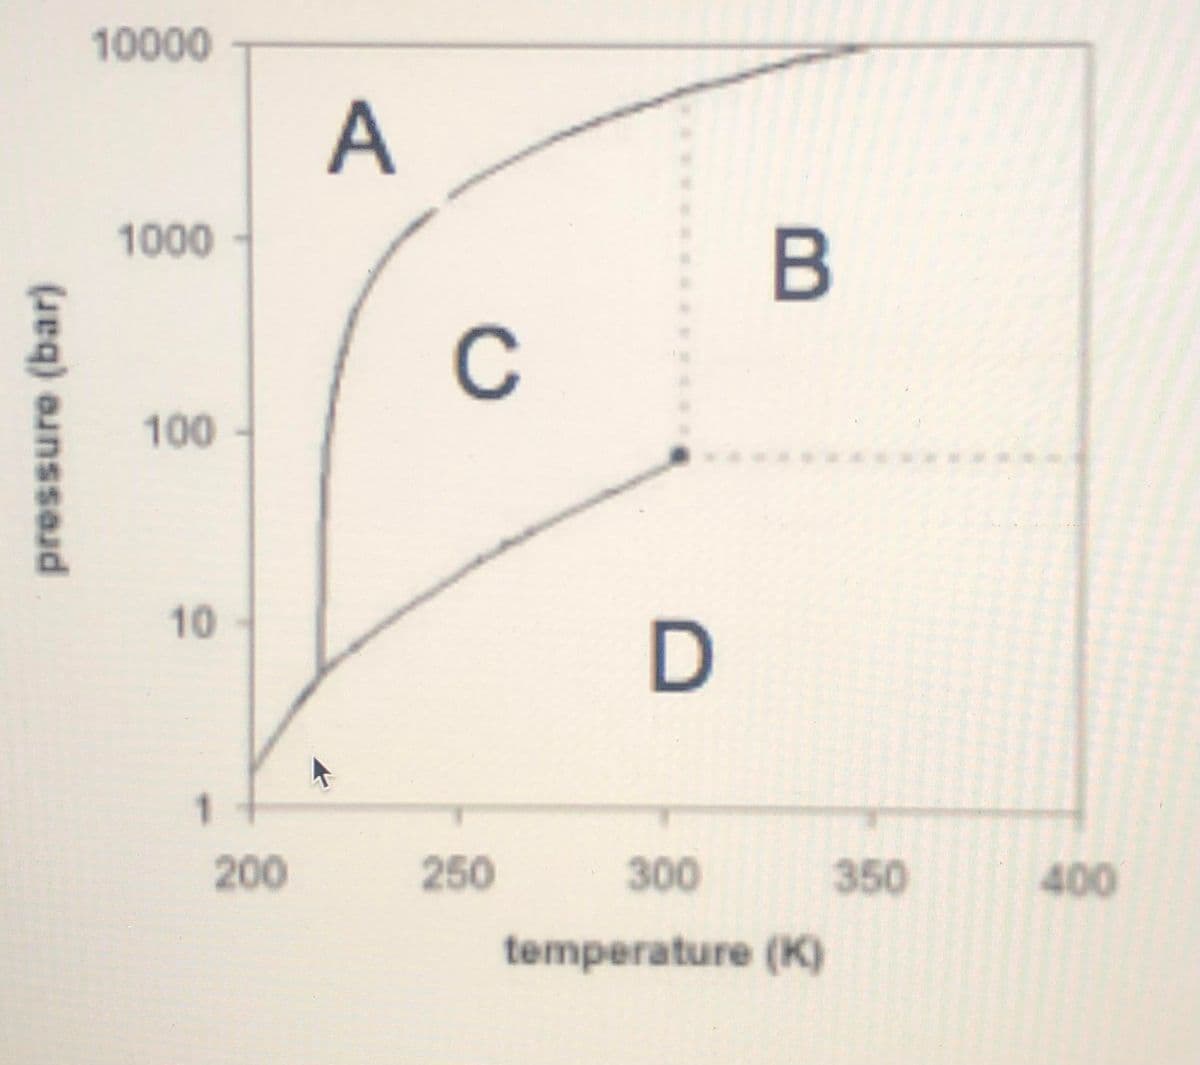 10000
1000
C
100
10
D
1
200
250
300
350
400
temperature (K)
pressure (bar)
A,
